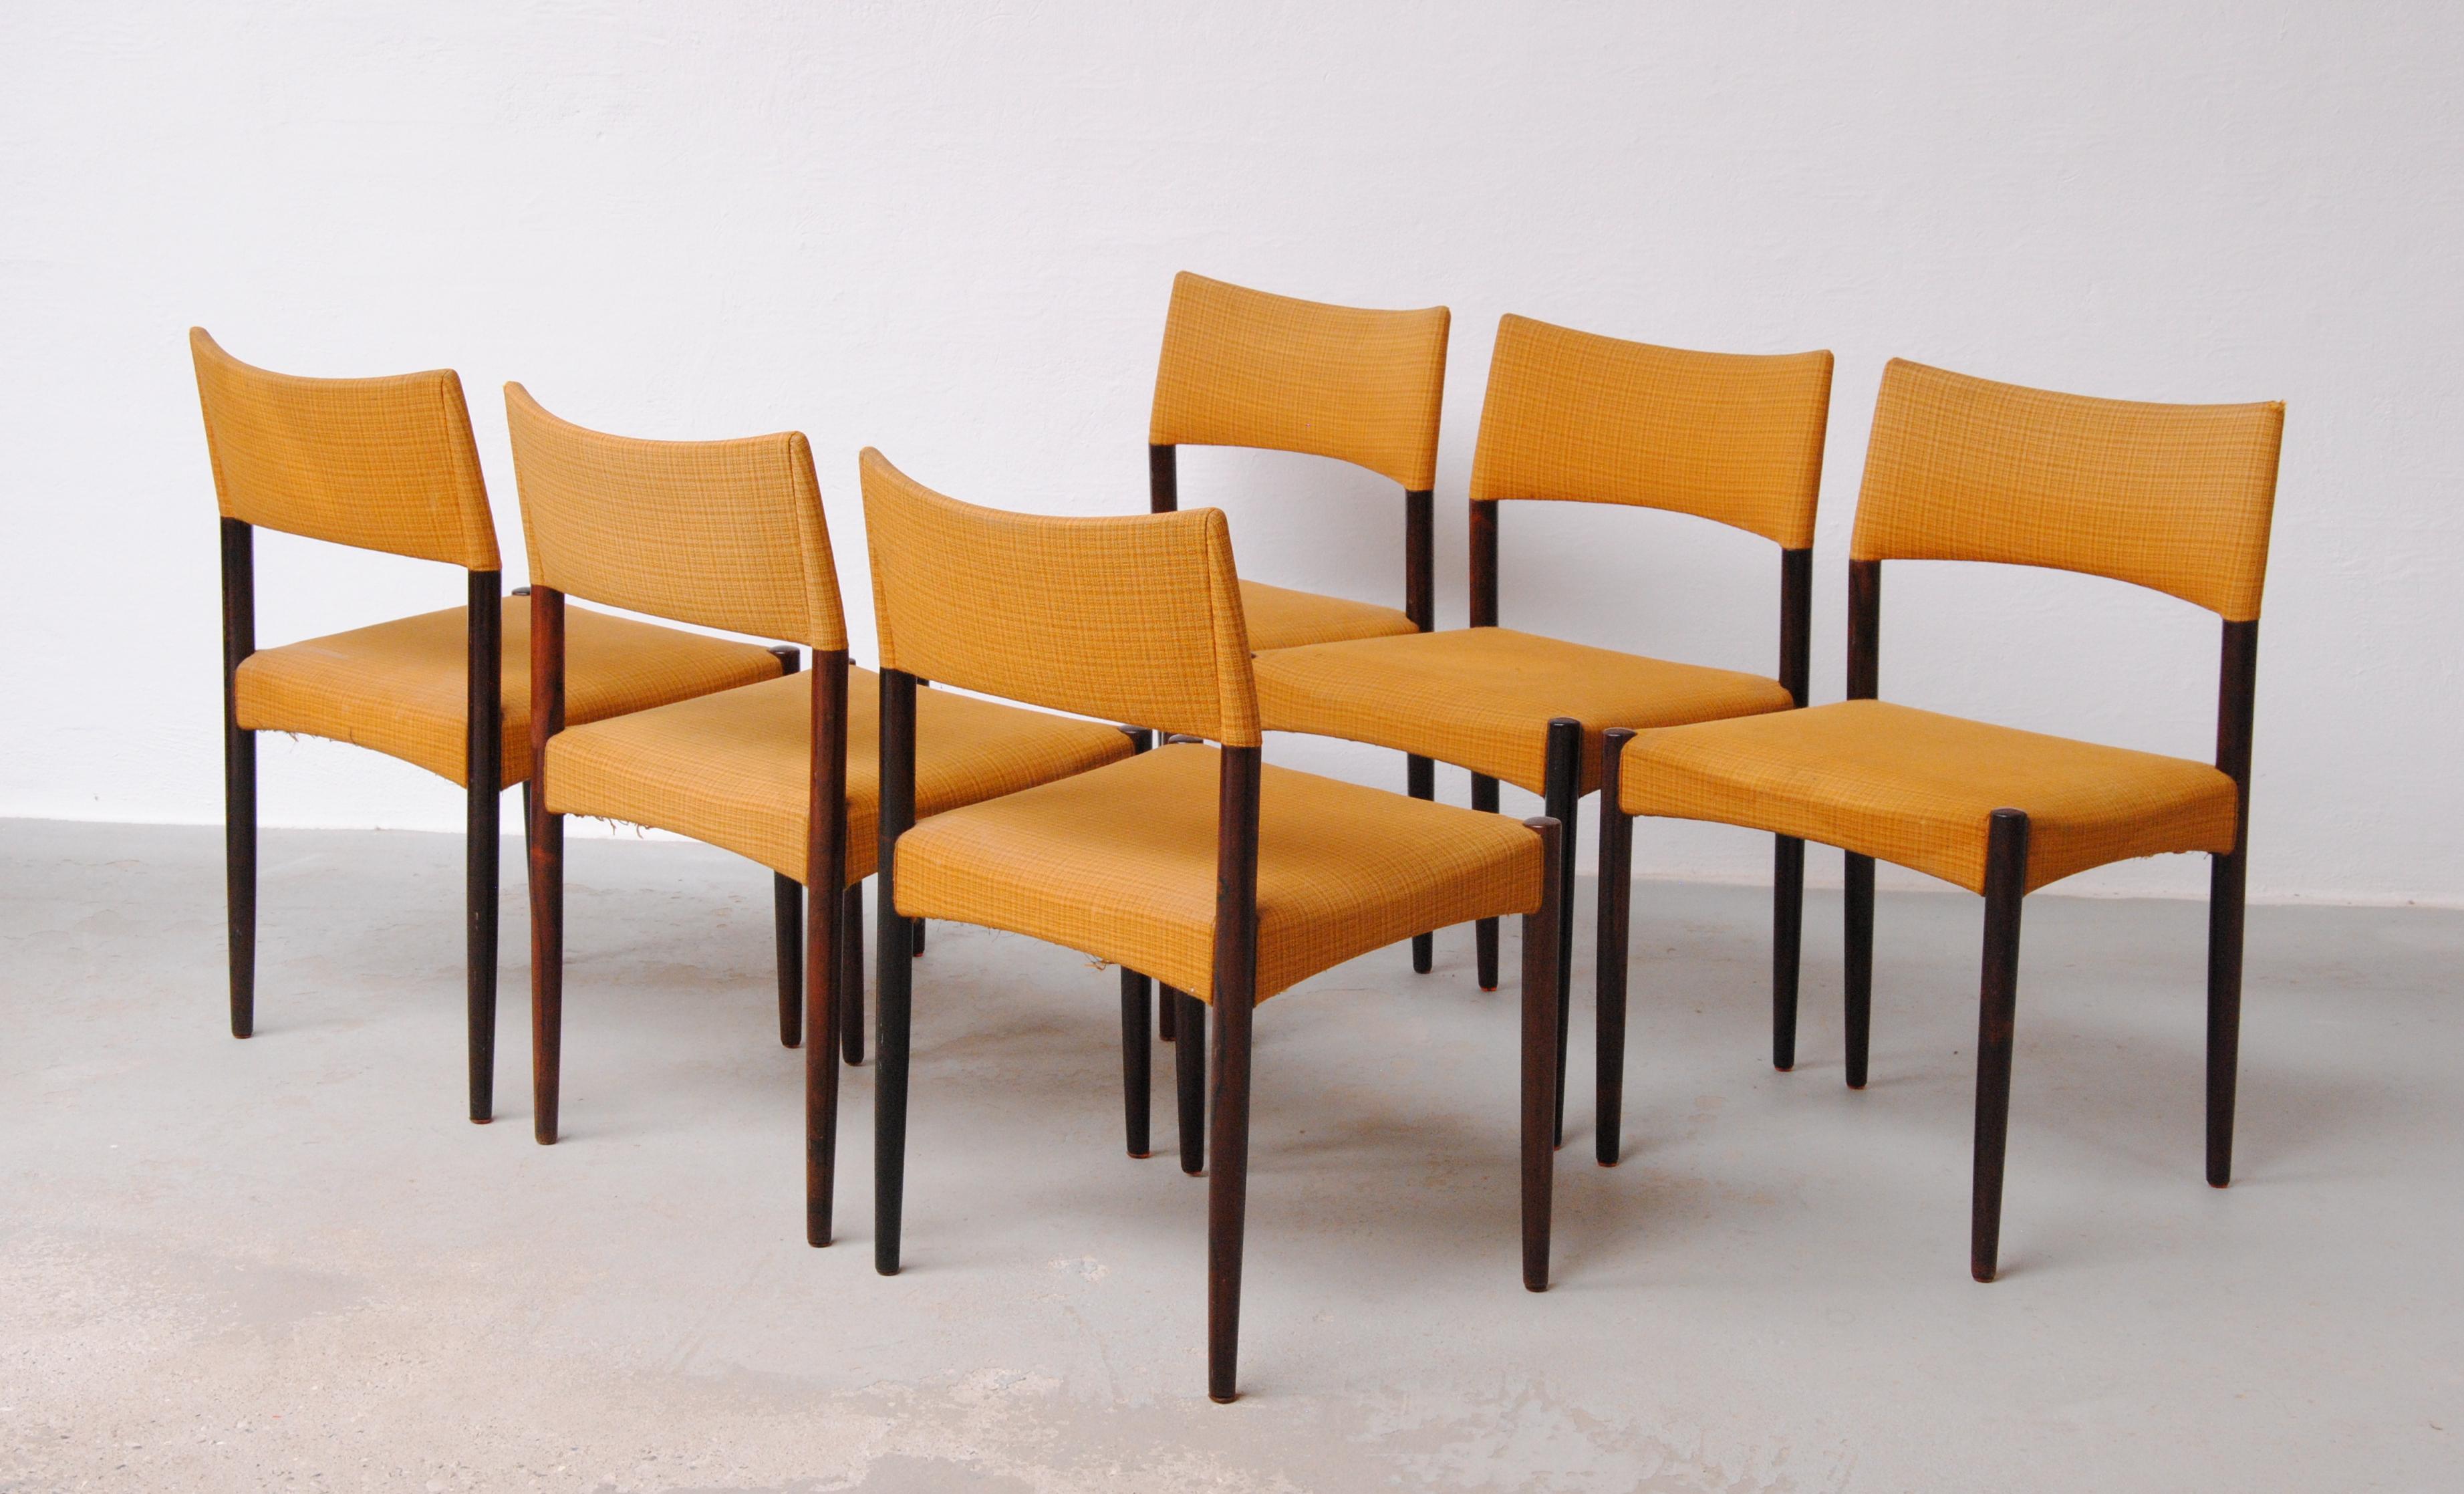 Ensemble de six chaises de salle à manger en palissandre Ejnar Larsen et Axel Bender Madsen restaurées par Willy Beck

Les chaises de salle à manger présentent un design modeste mais sophistiqué avec leur assise carrée et ce qui apparaît à première